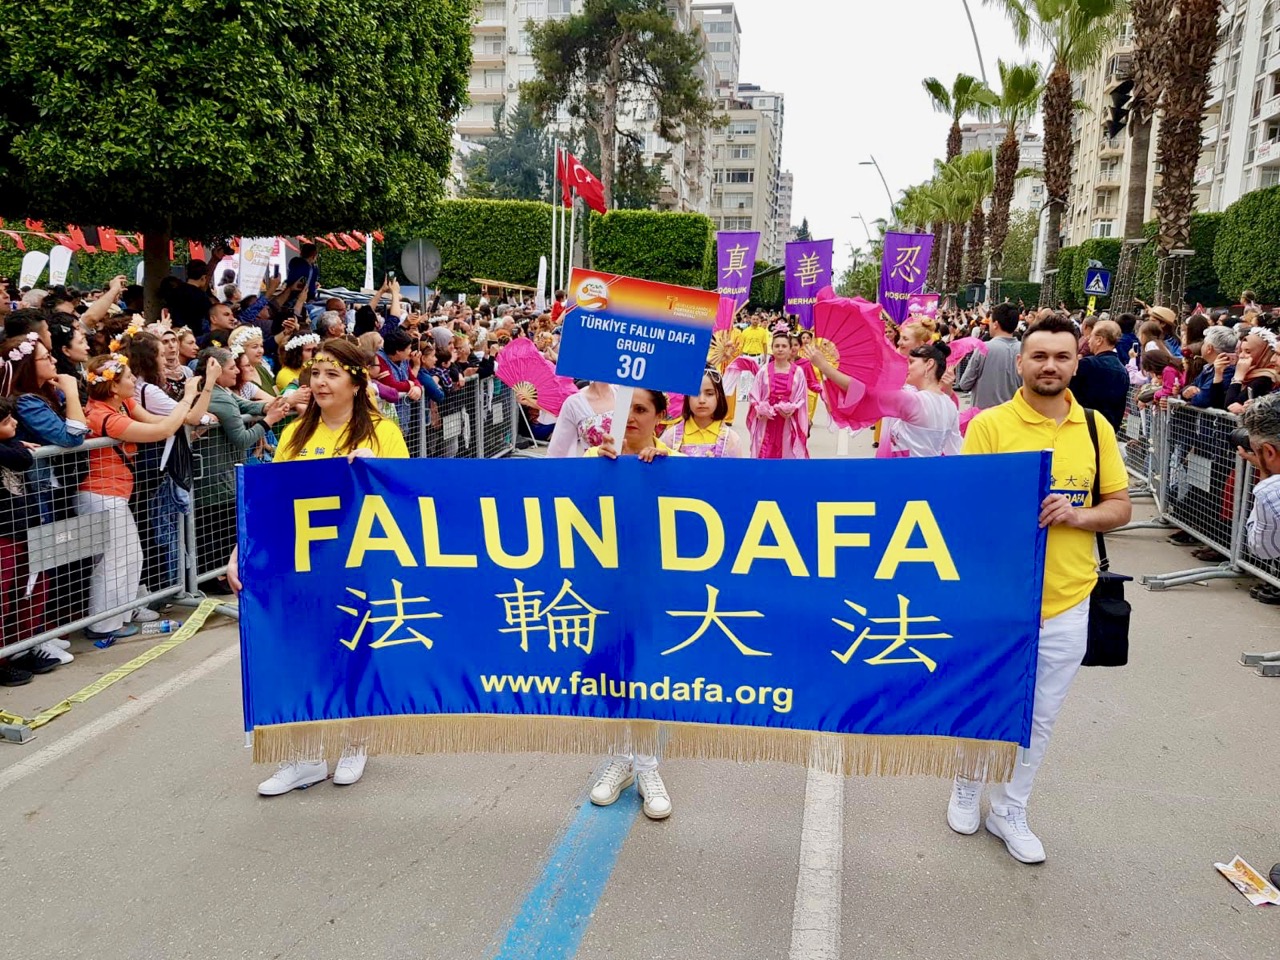 Image for article Turquia: Falun Dafa atrai grande interesse durante o Festival Adana Internacional da Floração das Laranjeiras